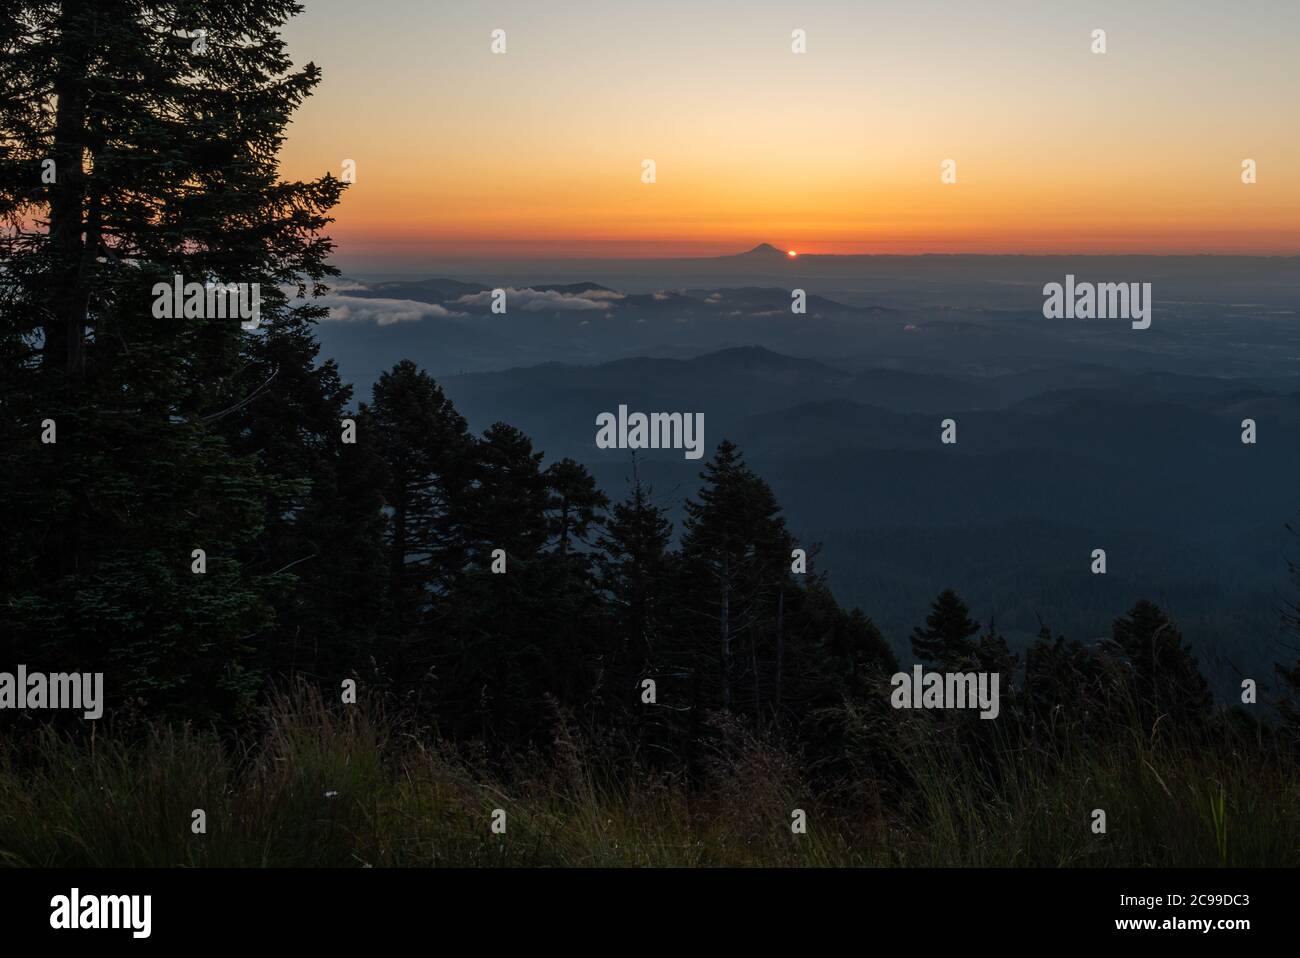 Le lever du soleil se situe juste au-dessus du flanc sud du mont Hood, avec la forêt et la vallée de Willamette en premier plan. Banque D'Images